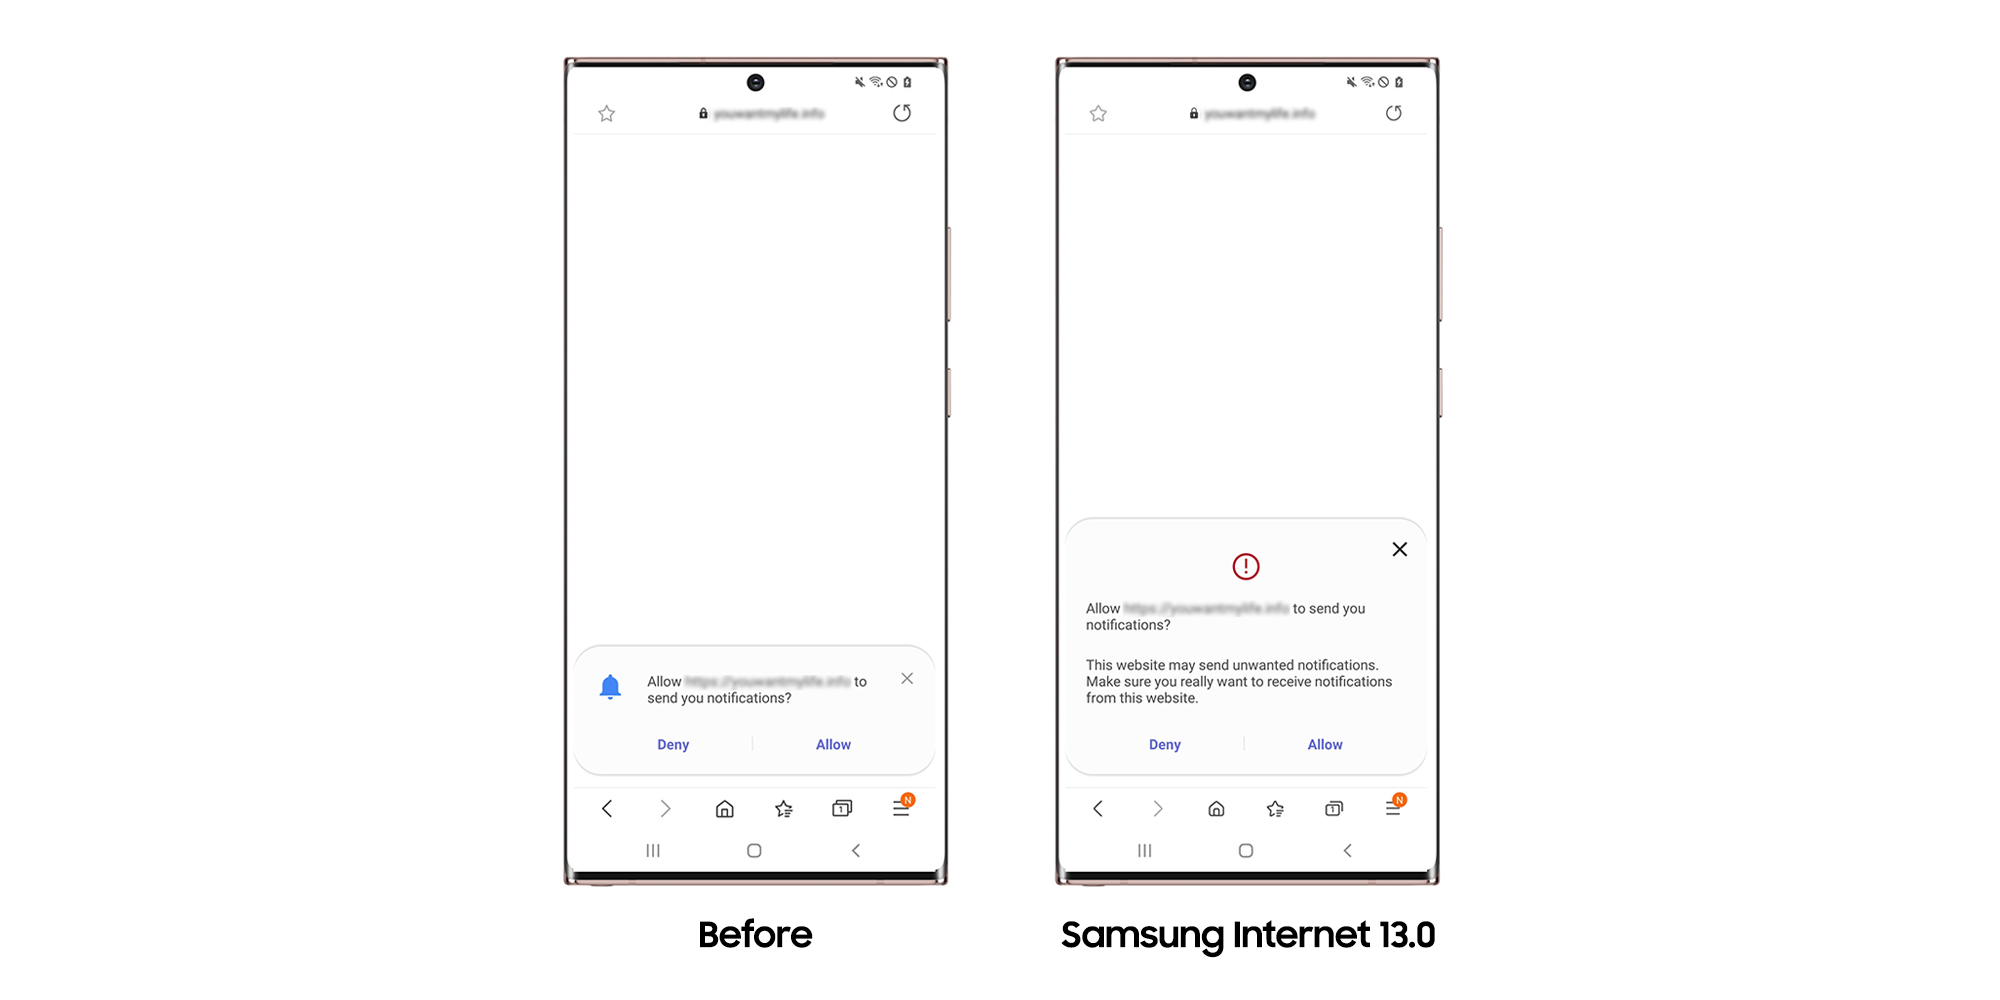 Samsung Internet 13.0 Updated UI